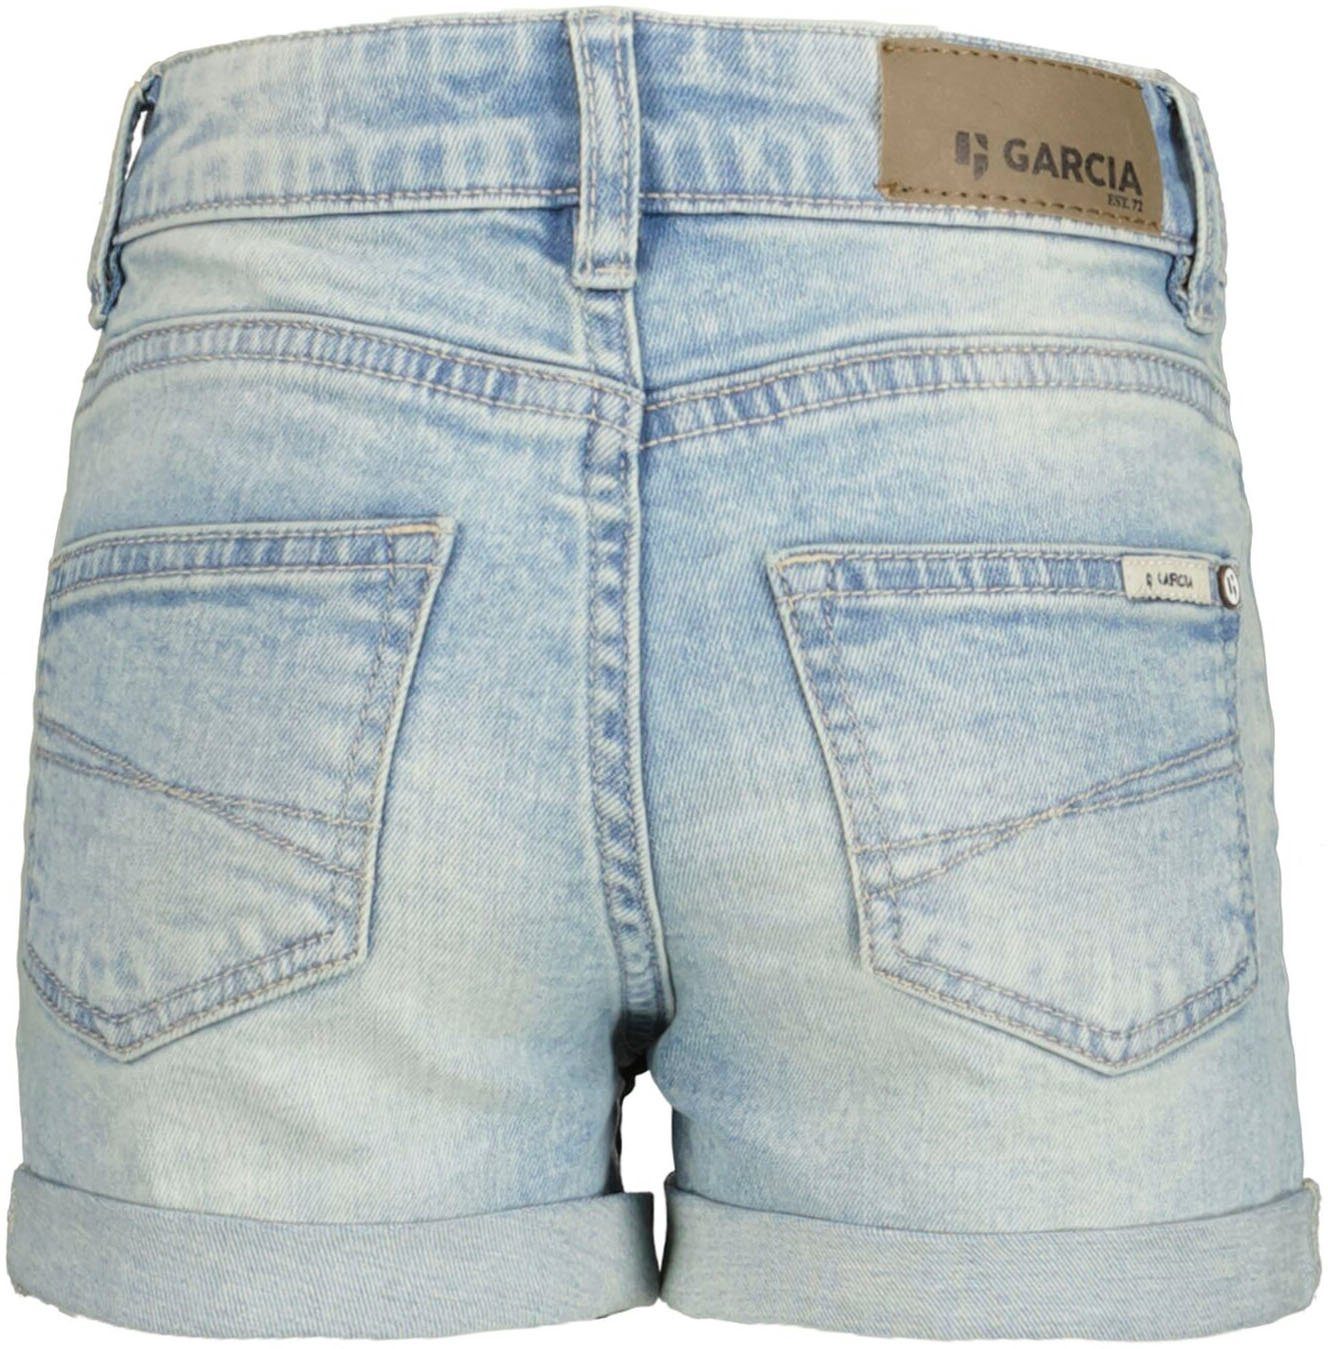 Jeansshorts für Sanna Girls Garcia